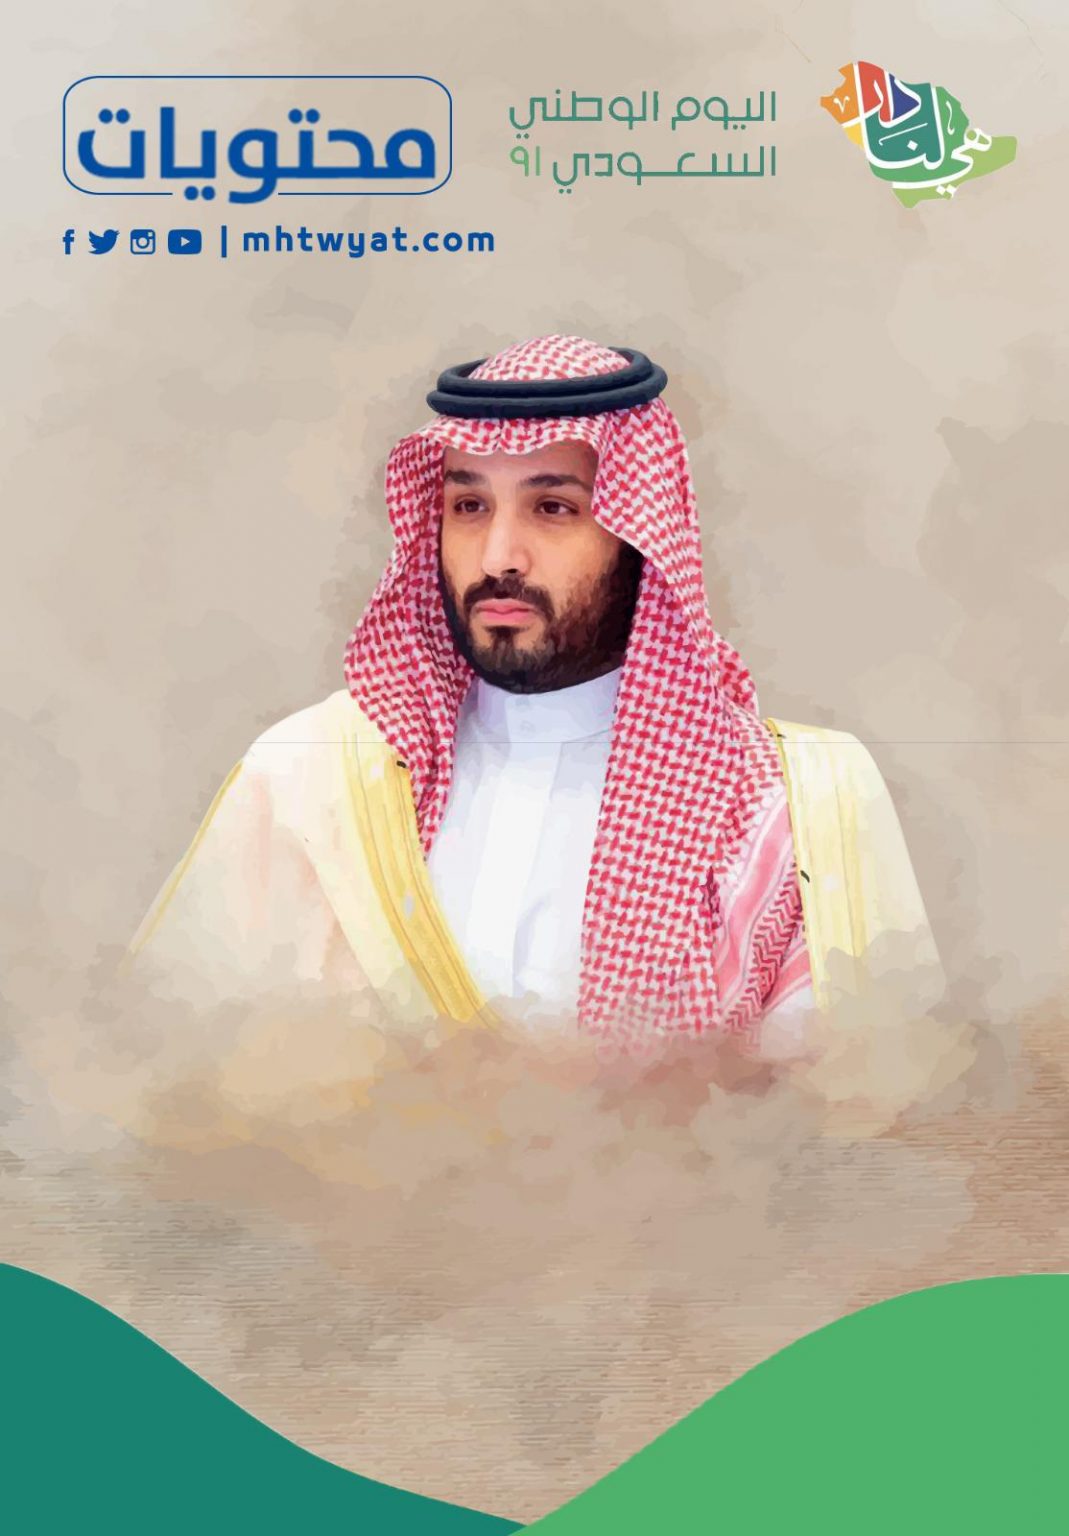 صور للملك والوطن بمناسبة اليوم الوطني السعودي 91